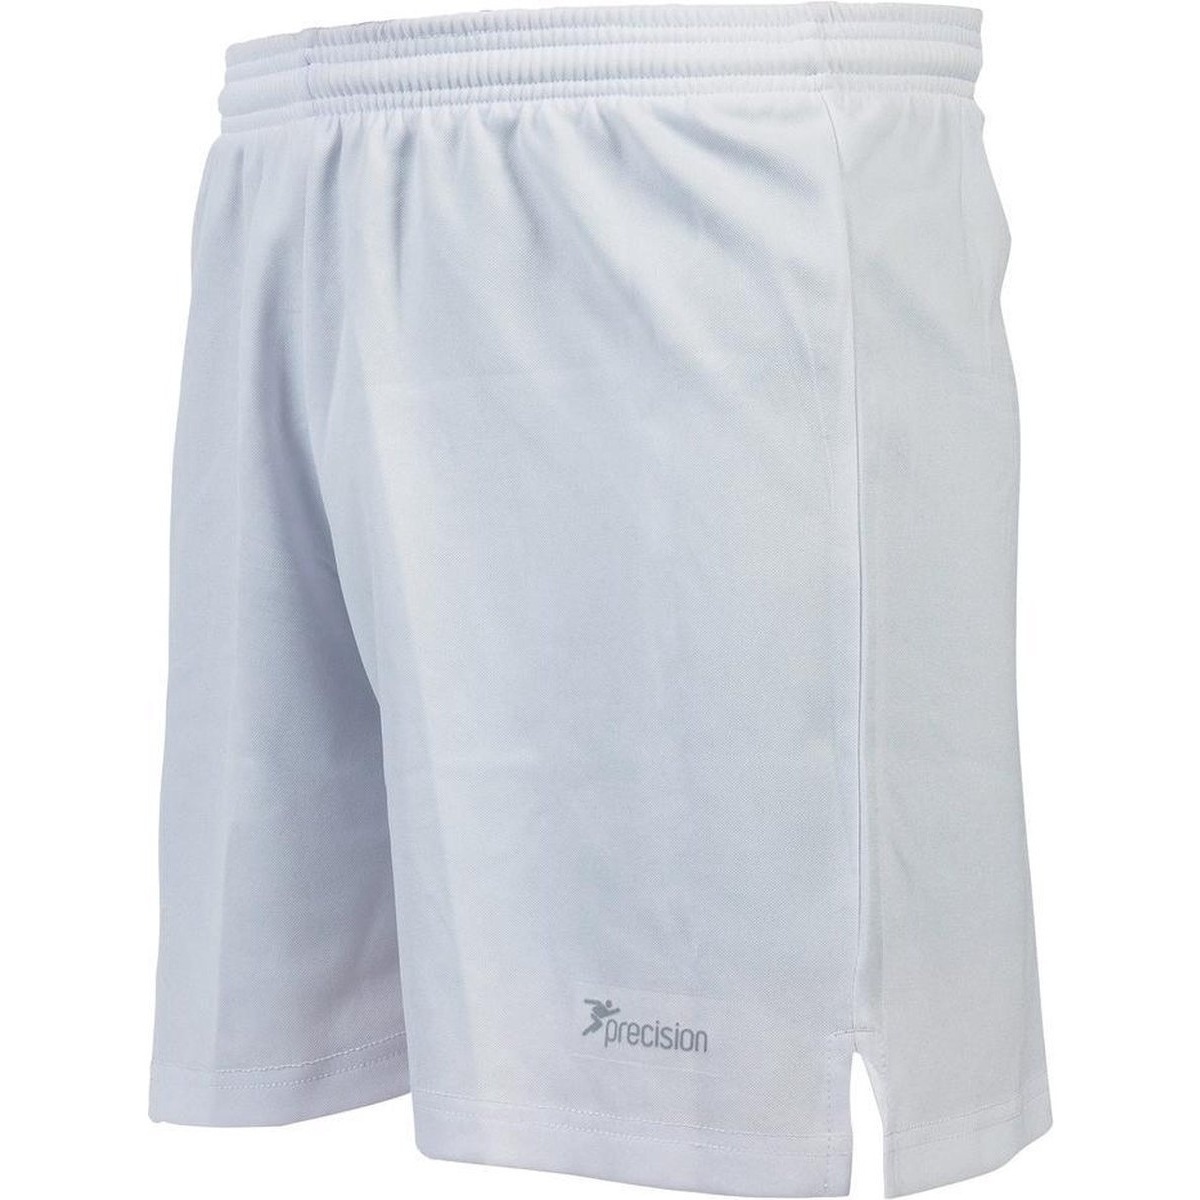 textil Shorts / Bermudas Precision Madrid Blanco